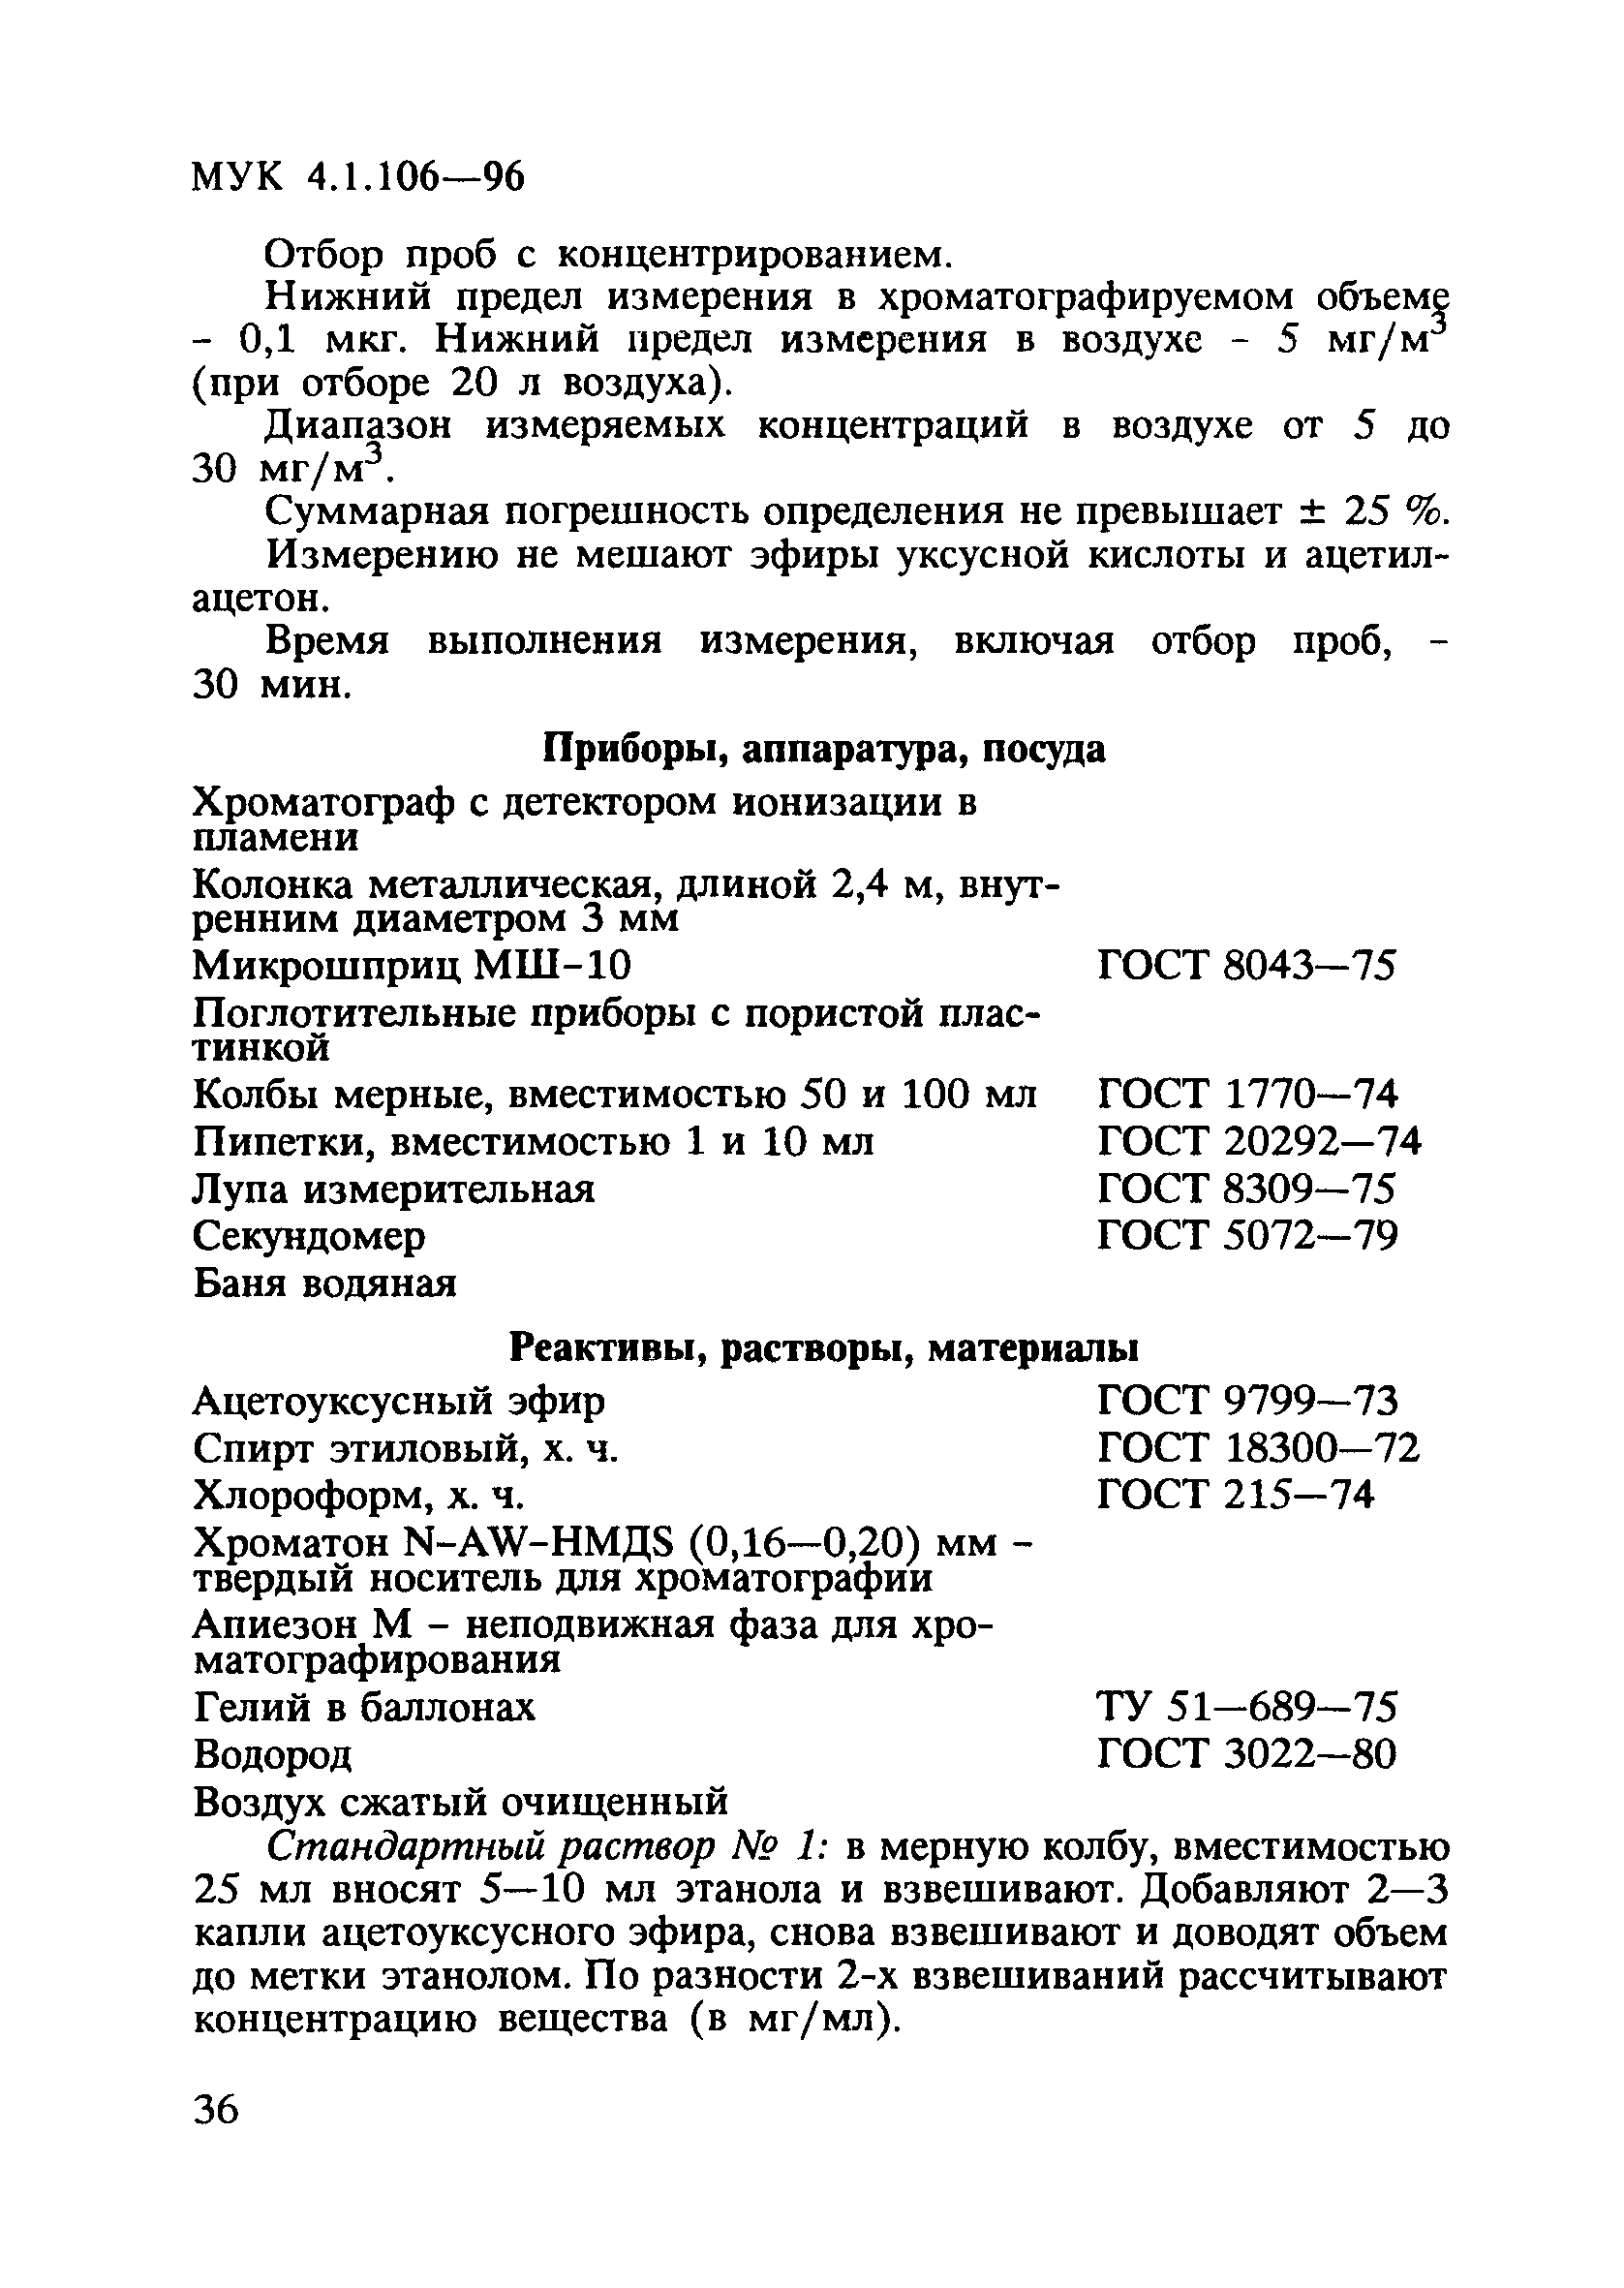 МУК 4.1.106-96